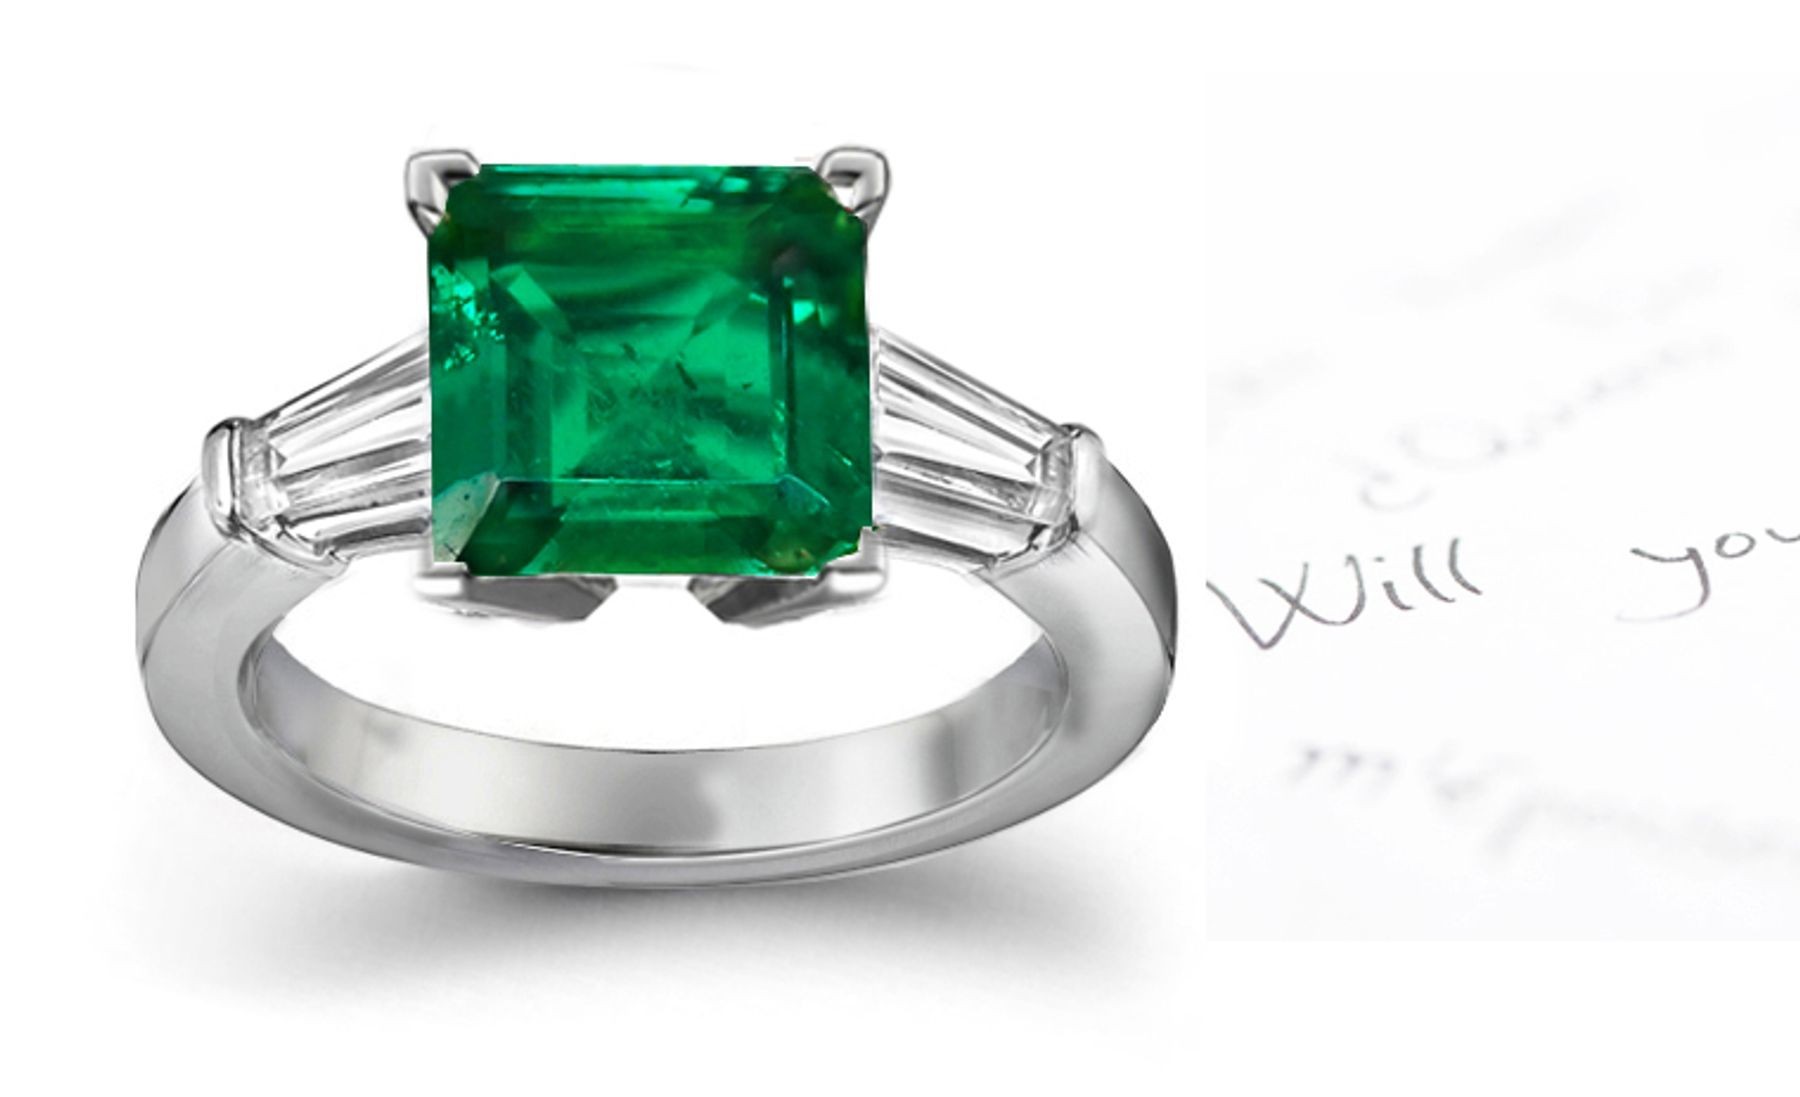 Signature 3 Stone Square True Emerald, Baguette Diamond & Platinum Ring Size 3 to 8